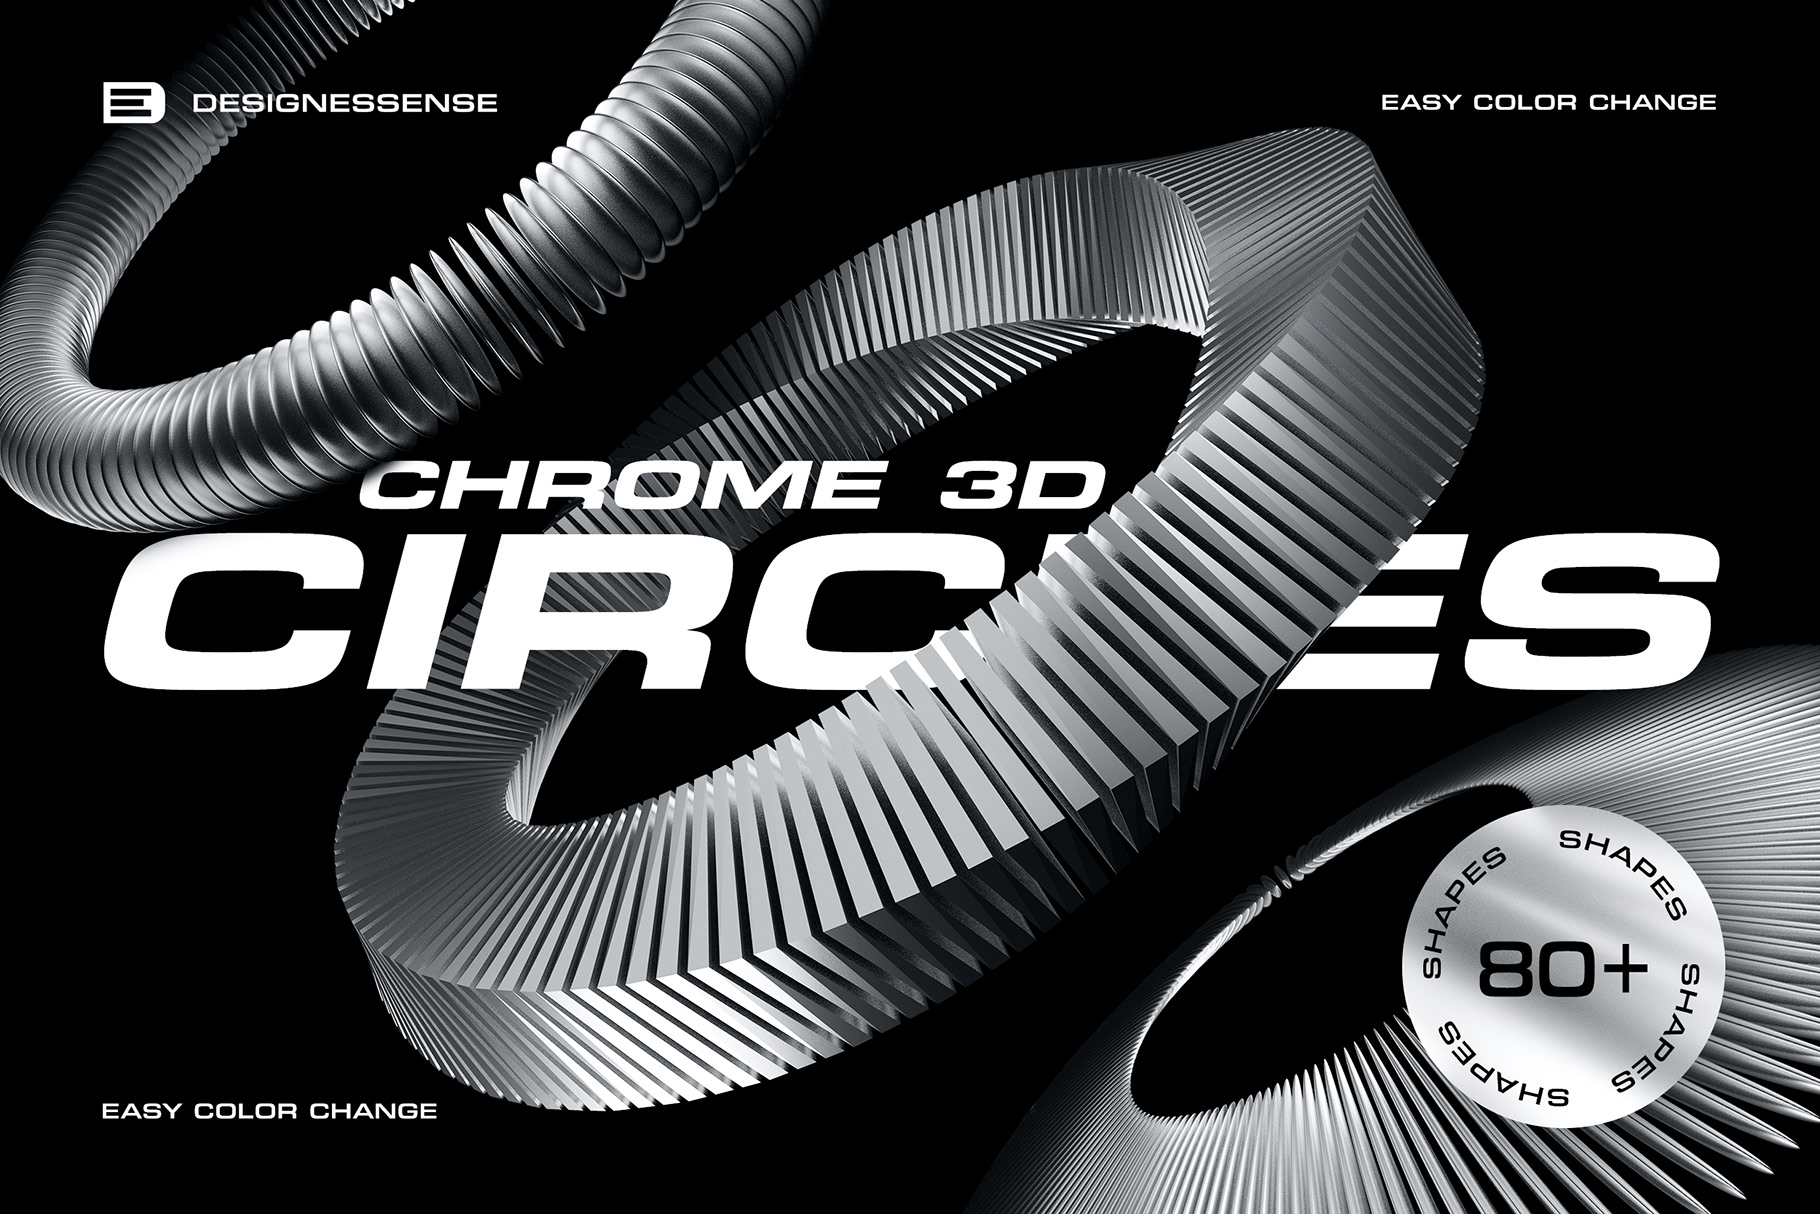 DOWNLOAD - 3D Chrome Circles rendition image